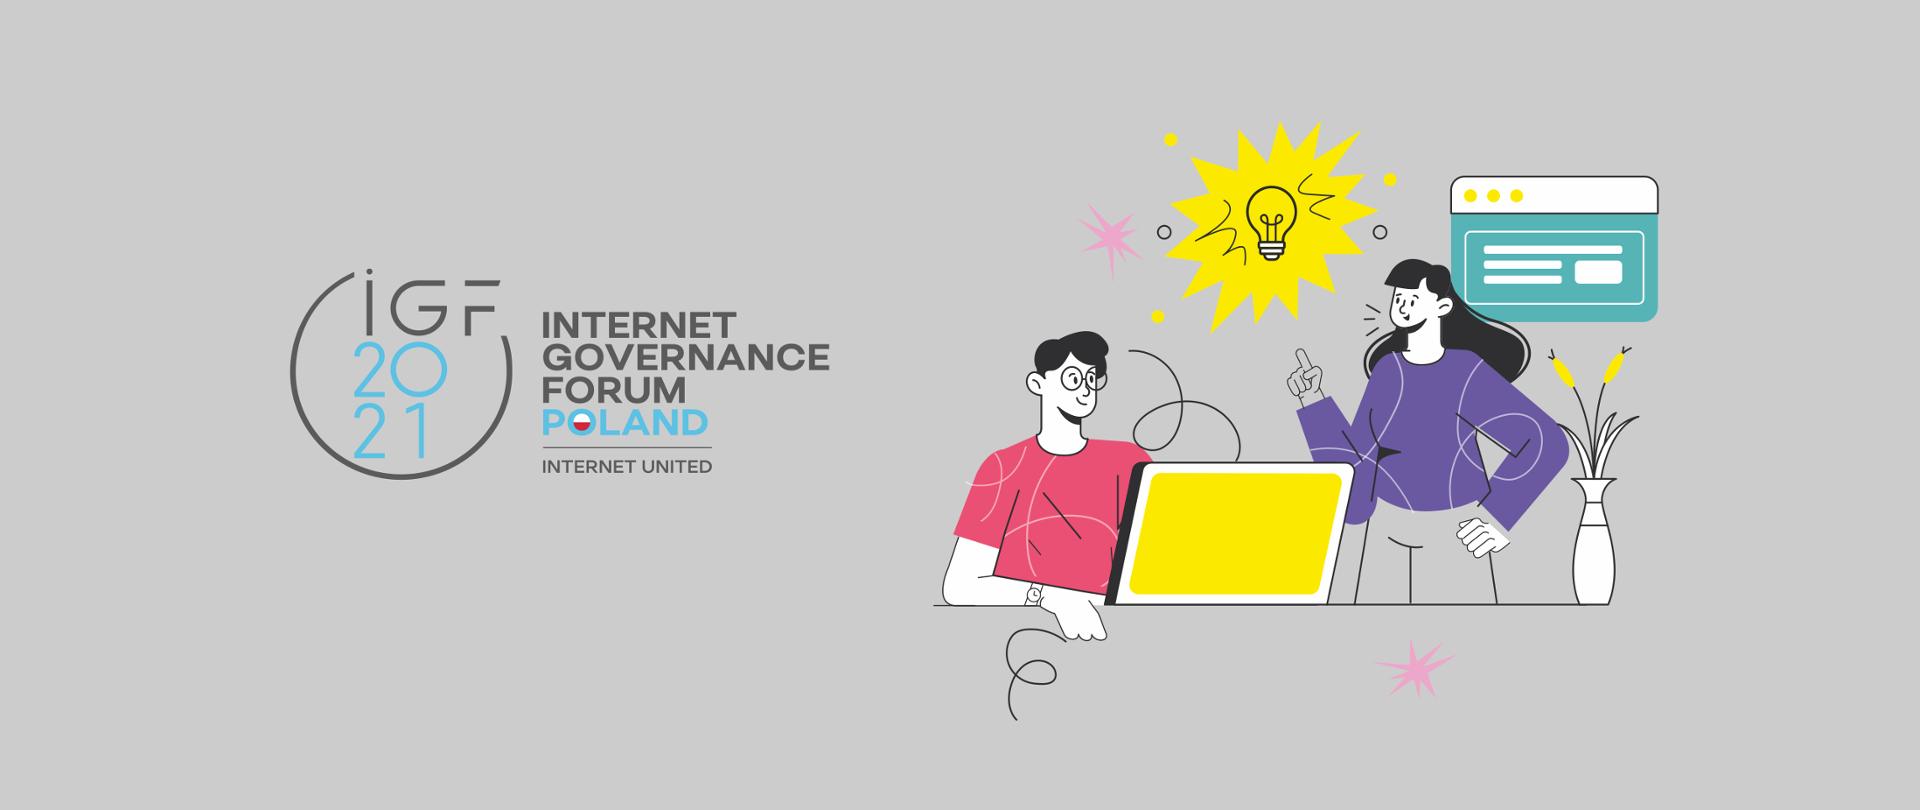 Grafika wektorowa na szarym tle. Po lewej stronie logo IGF 2021 / Internet Governance Forum. Po prawej rysunek mężczyzny i kobiety. Mężczyzna siedzi przy biurku przed laptopem i się uśmiecha. Kobieta stoi i wskazuje palcem na ikonę żarówki symbolizująca pomysł. Na biurku stoi wazon z kwiatami.